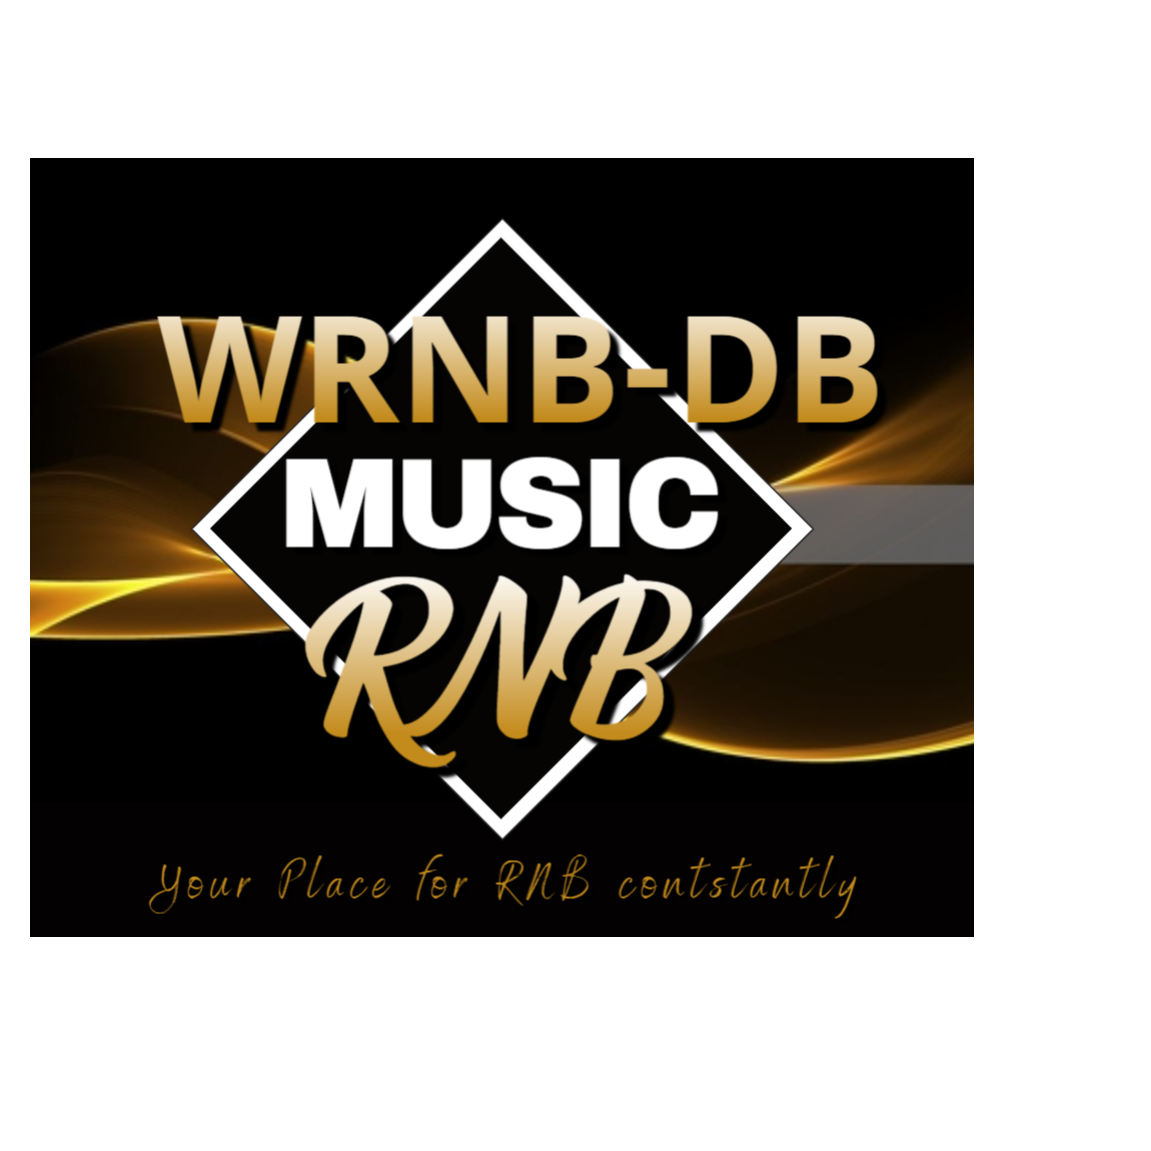 WRNB-DB